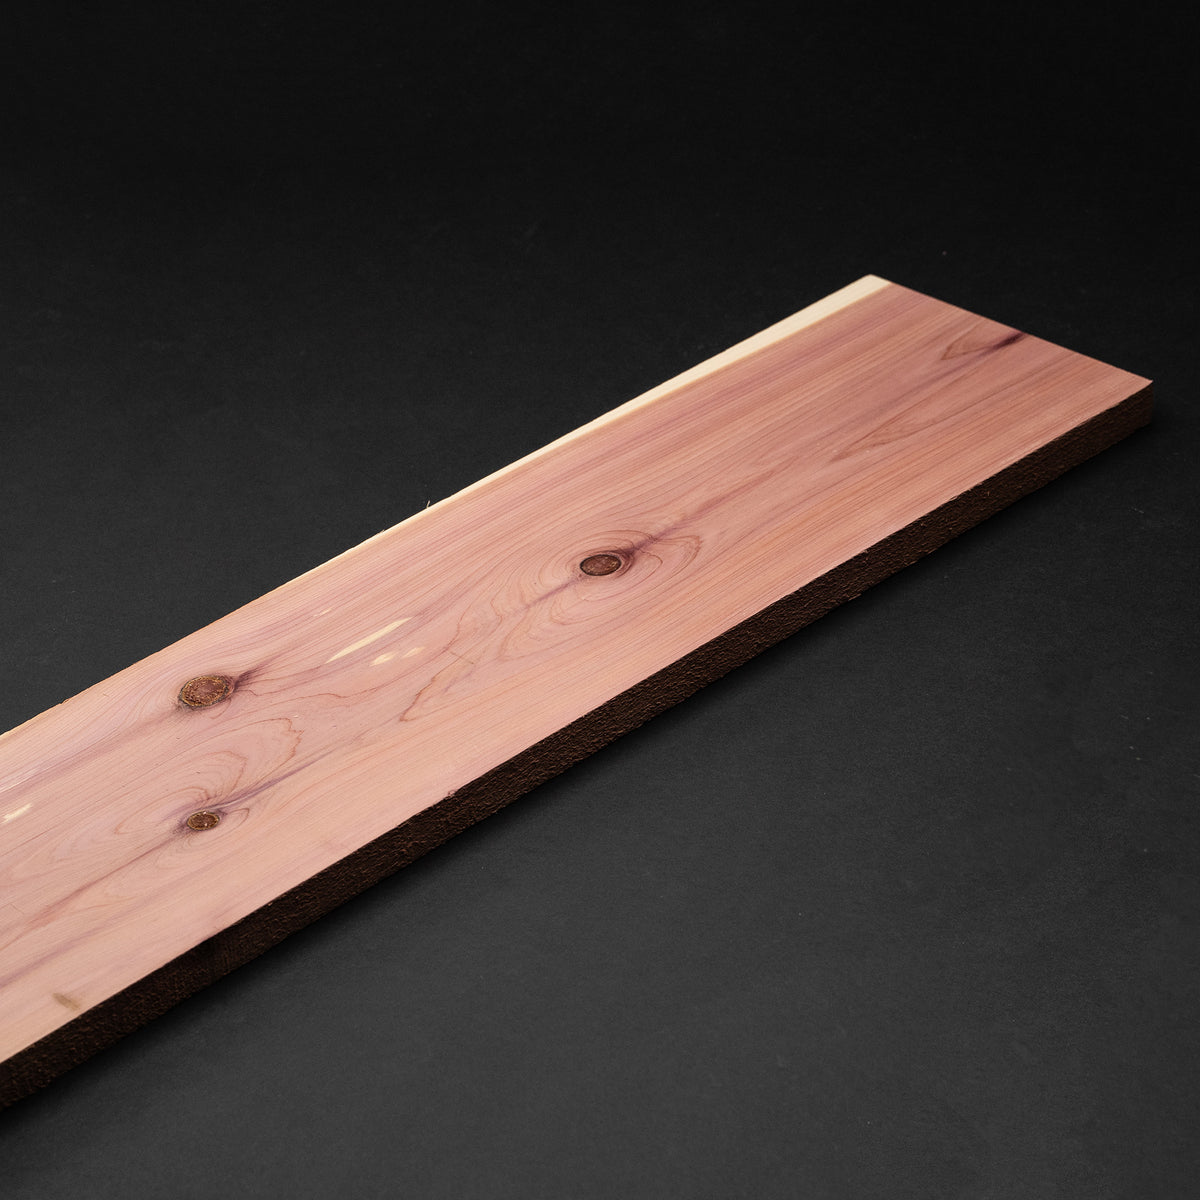 4/4 1” Eastern Red Cedar Boards - Kiln Dried Dimensional Lumber - Cut to Size Eastern Red Cedar Board